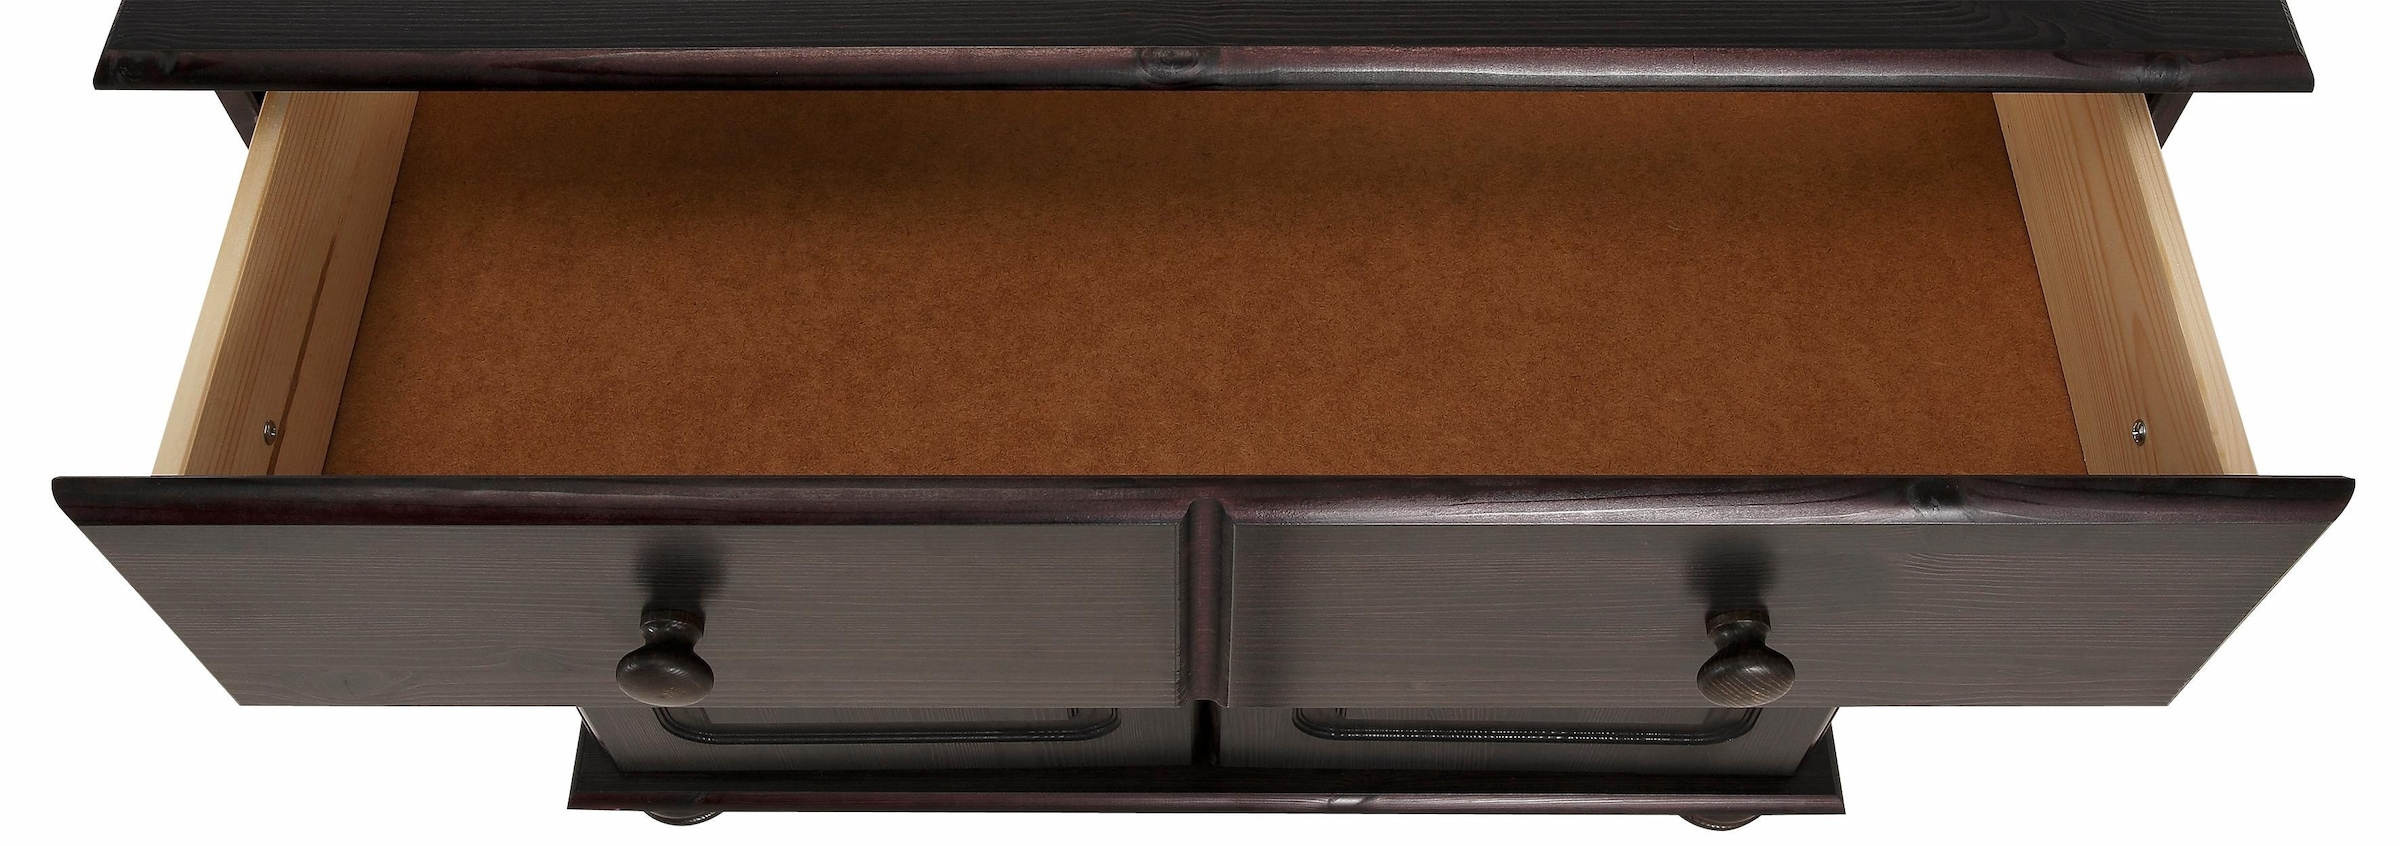 Home affaire Sideboard »Mette«, mit gefrästen, kugelförmigen Füssen, Breite  80 cm günstig kaufen